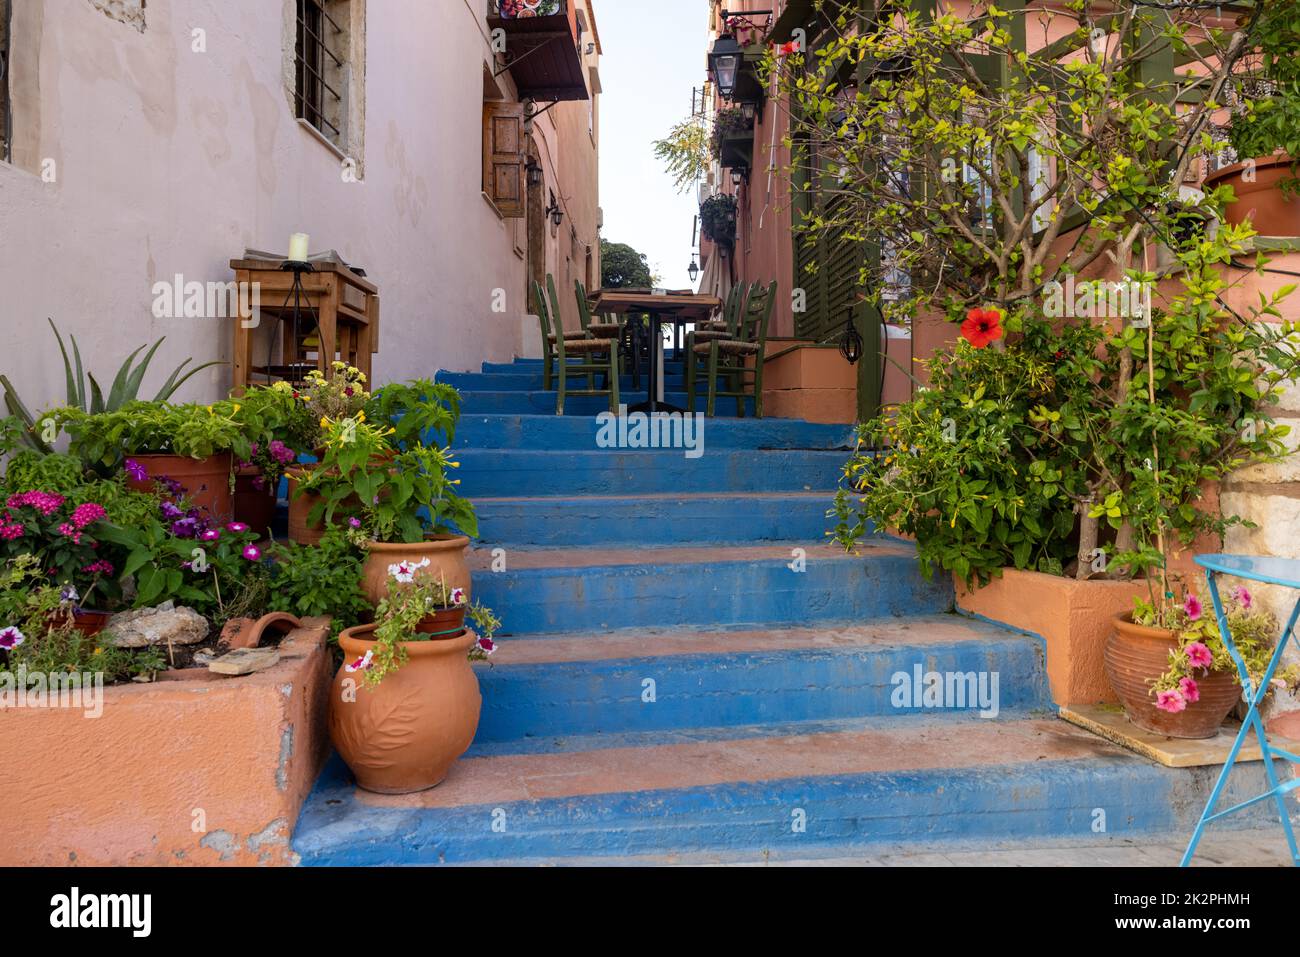 Petite rue étroite avec des escaliers bleus dans la vieille ville de Rethymnon, île de Crète, Grèce Banque D'Images